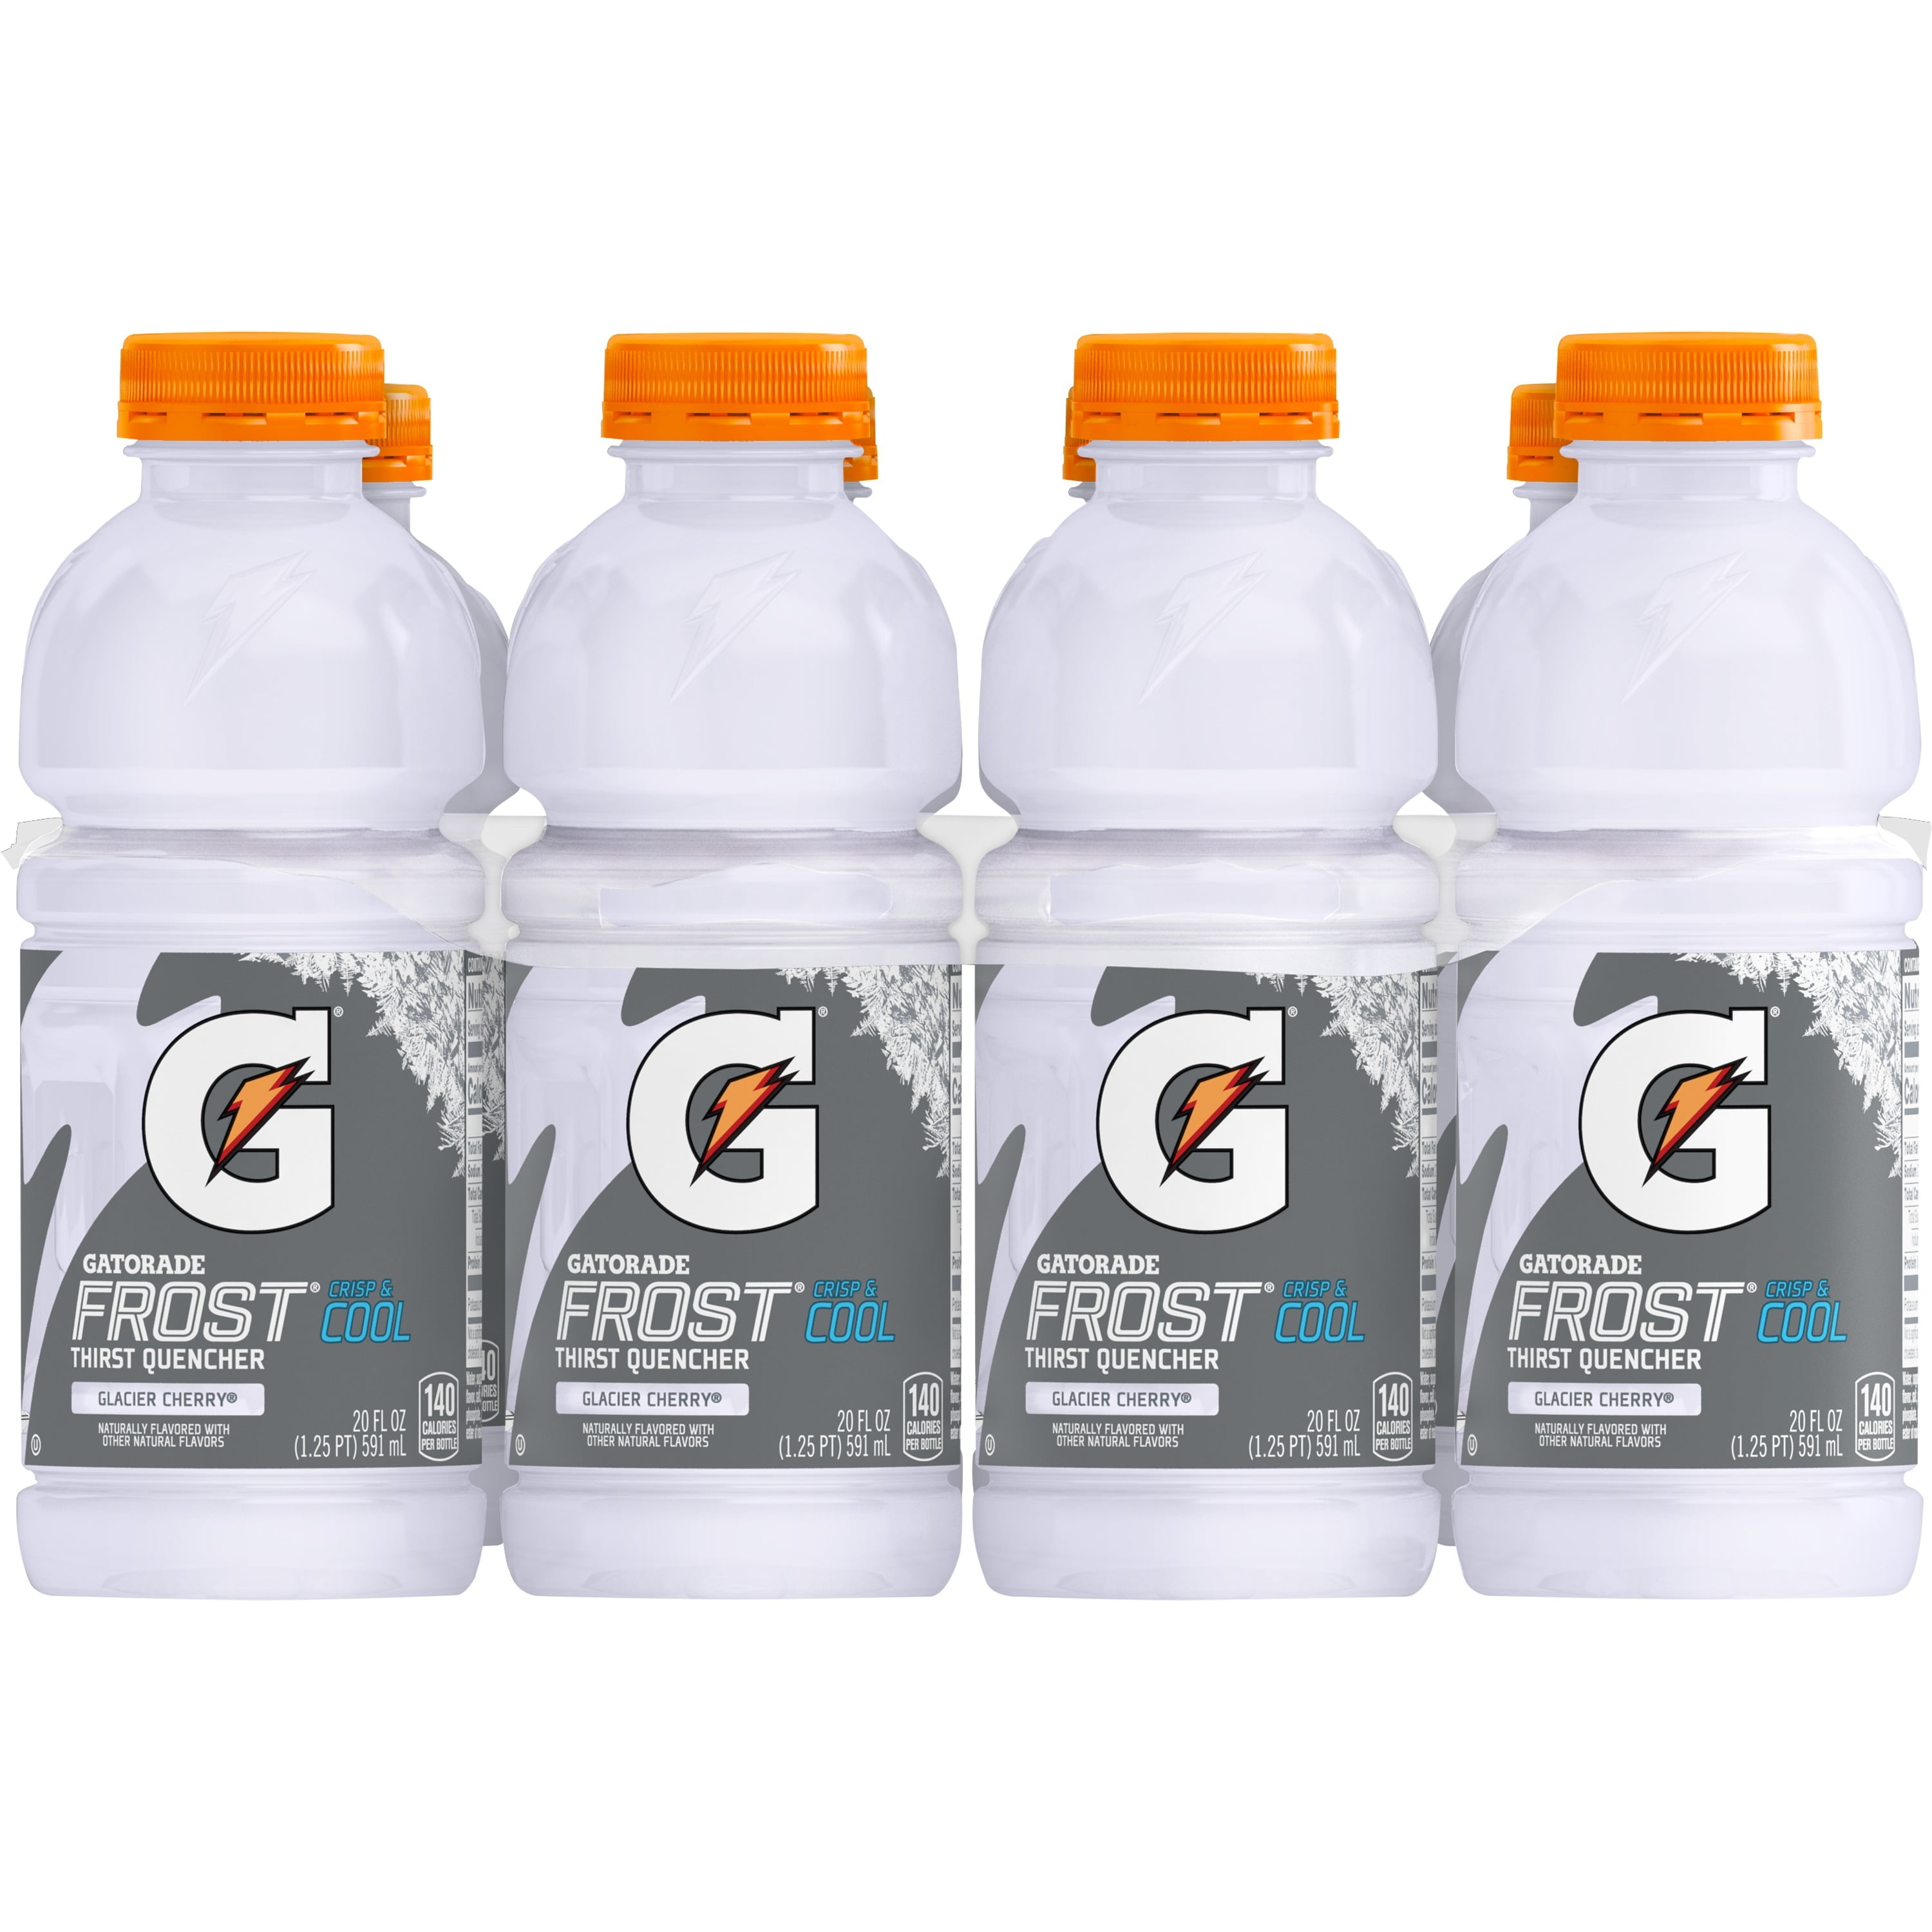 (8 Count) Gatorade Thirst Quencher Sports Drink, Glacier